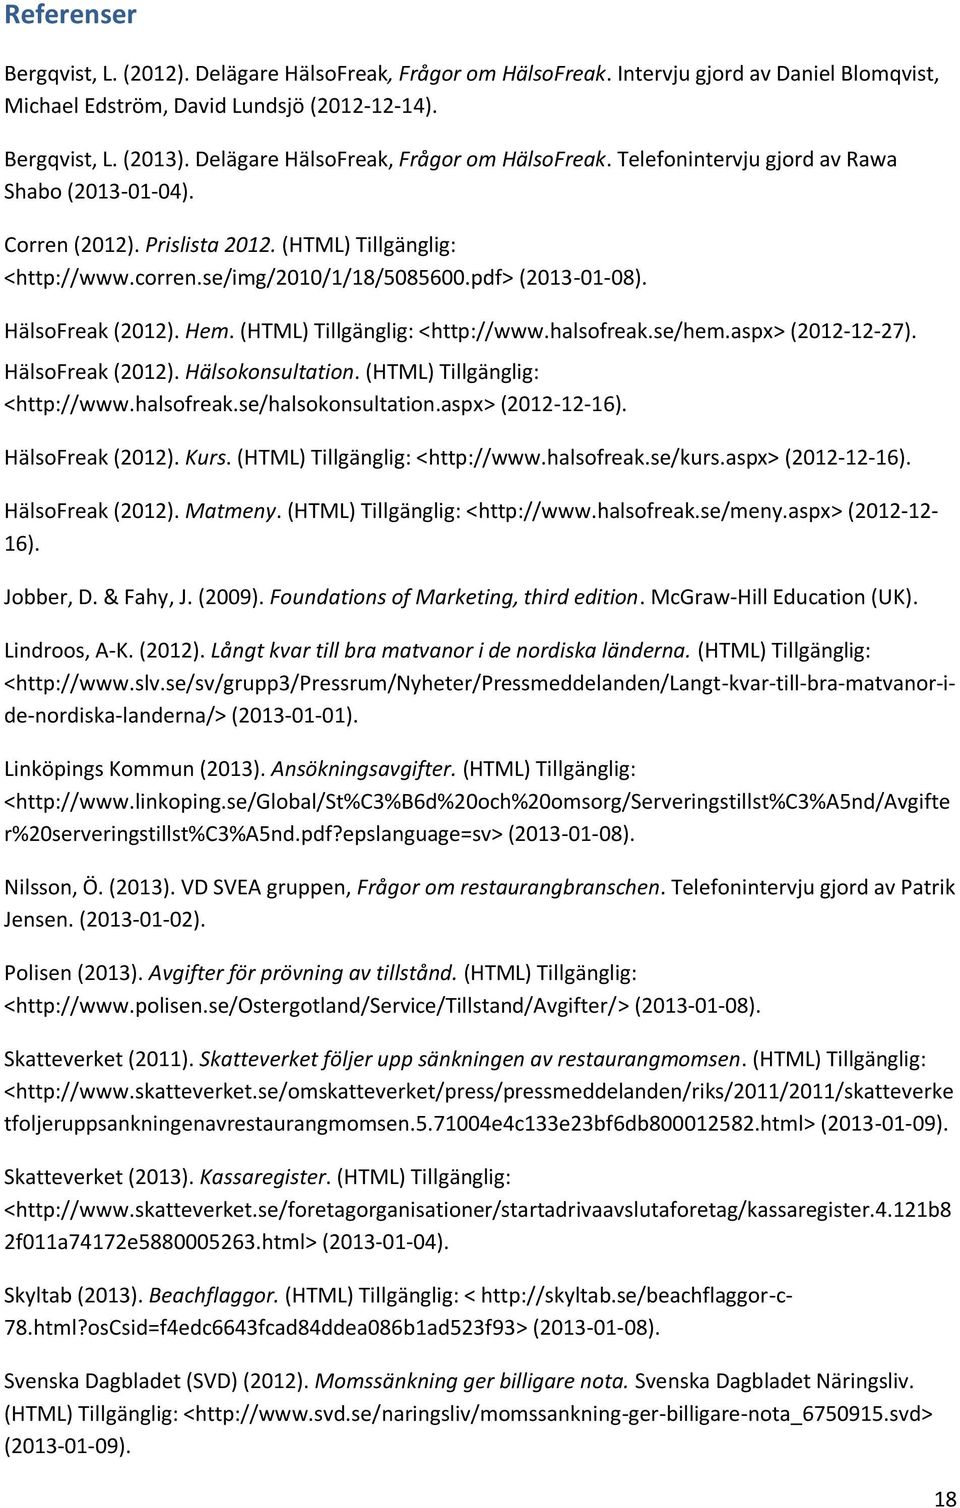 pdf> (2013-01-08). HälsoFreak (2012). Hem. (HTML) Tillgänglig: <http://www.halsofreak.se/hem.aspx> (2012-12-27). HälsoFreak (2012). Hälsokonsultation. (HTML) Tillgänglig: <http://www.halsofreak.se/halsokonsultation.